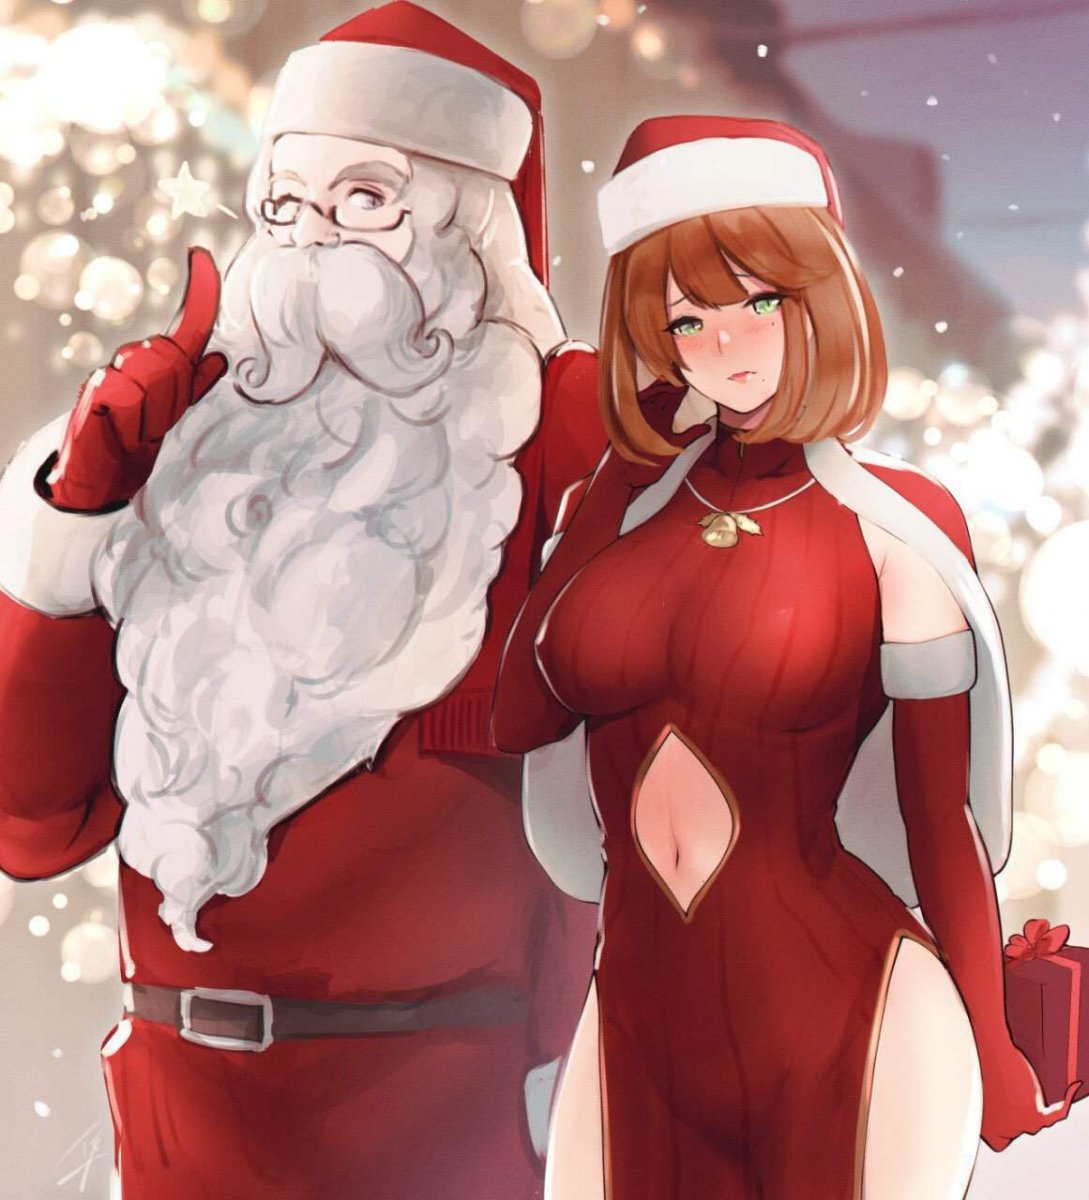 Big tit santa elf